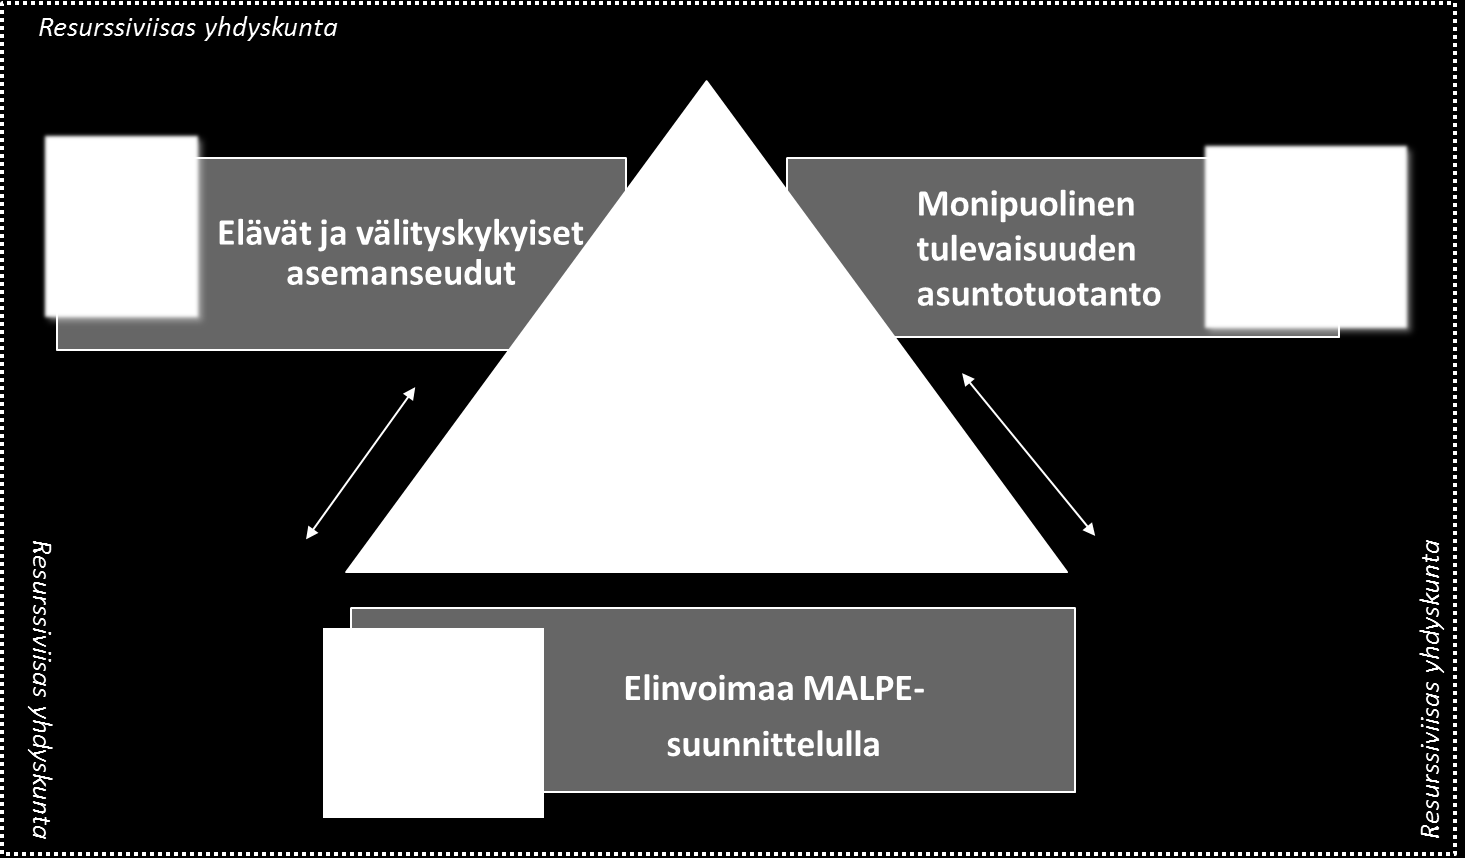 Vuonna 2016 verkoston toiminta painottuu seuraaviin painopistealueisiin: Elinvoimaa MALPEsuunnittelulla, Elävät ja välityskykyiset asemanseudut, Monipuolinen tulevaisuuden asuntotuotanto.